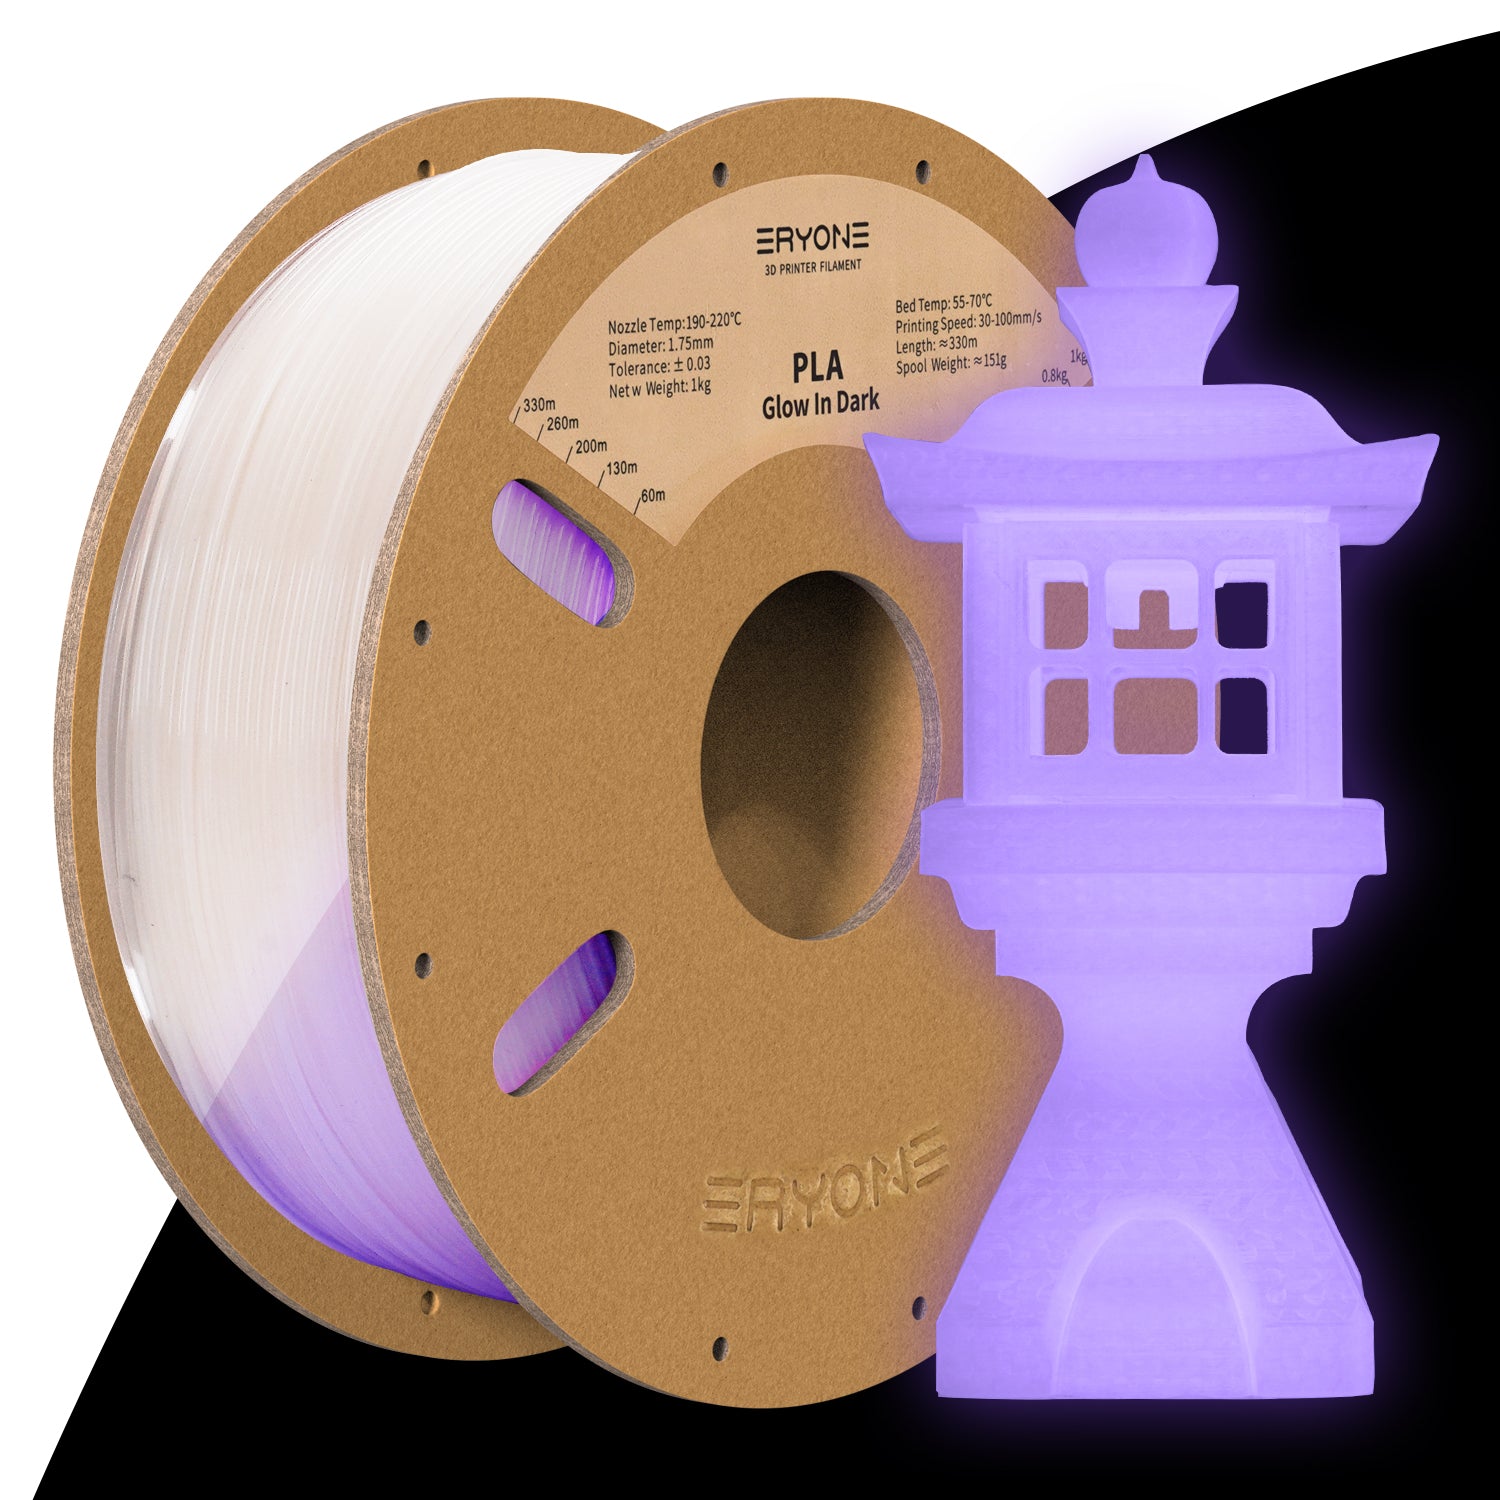 Filament de soie PLA pour impression 3D, 1.75MM, 250g, brillant